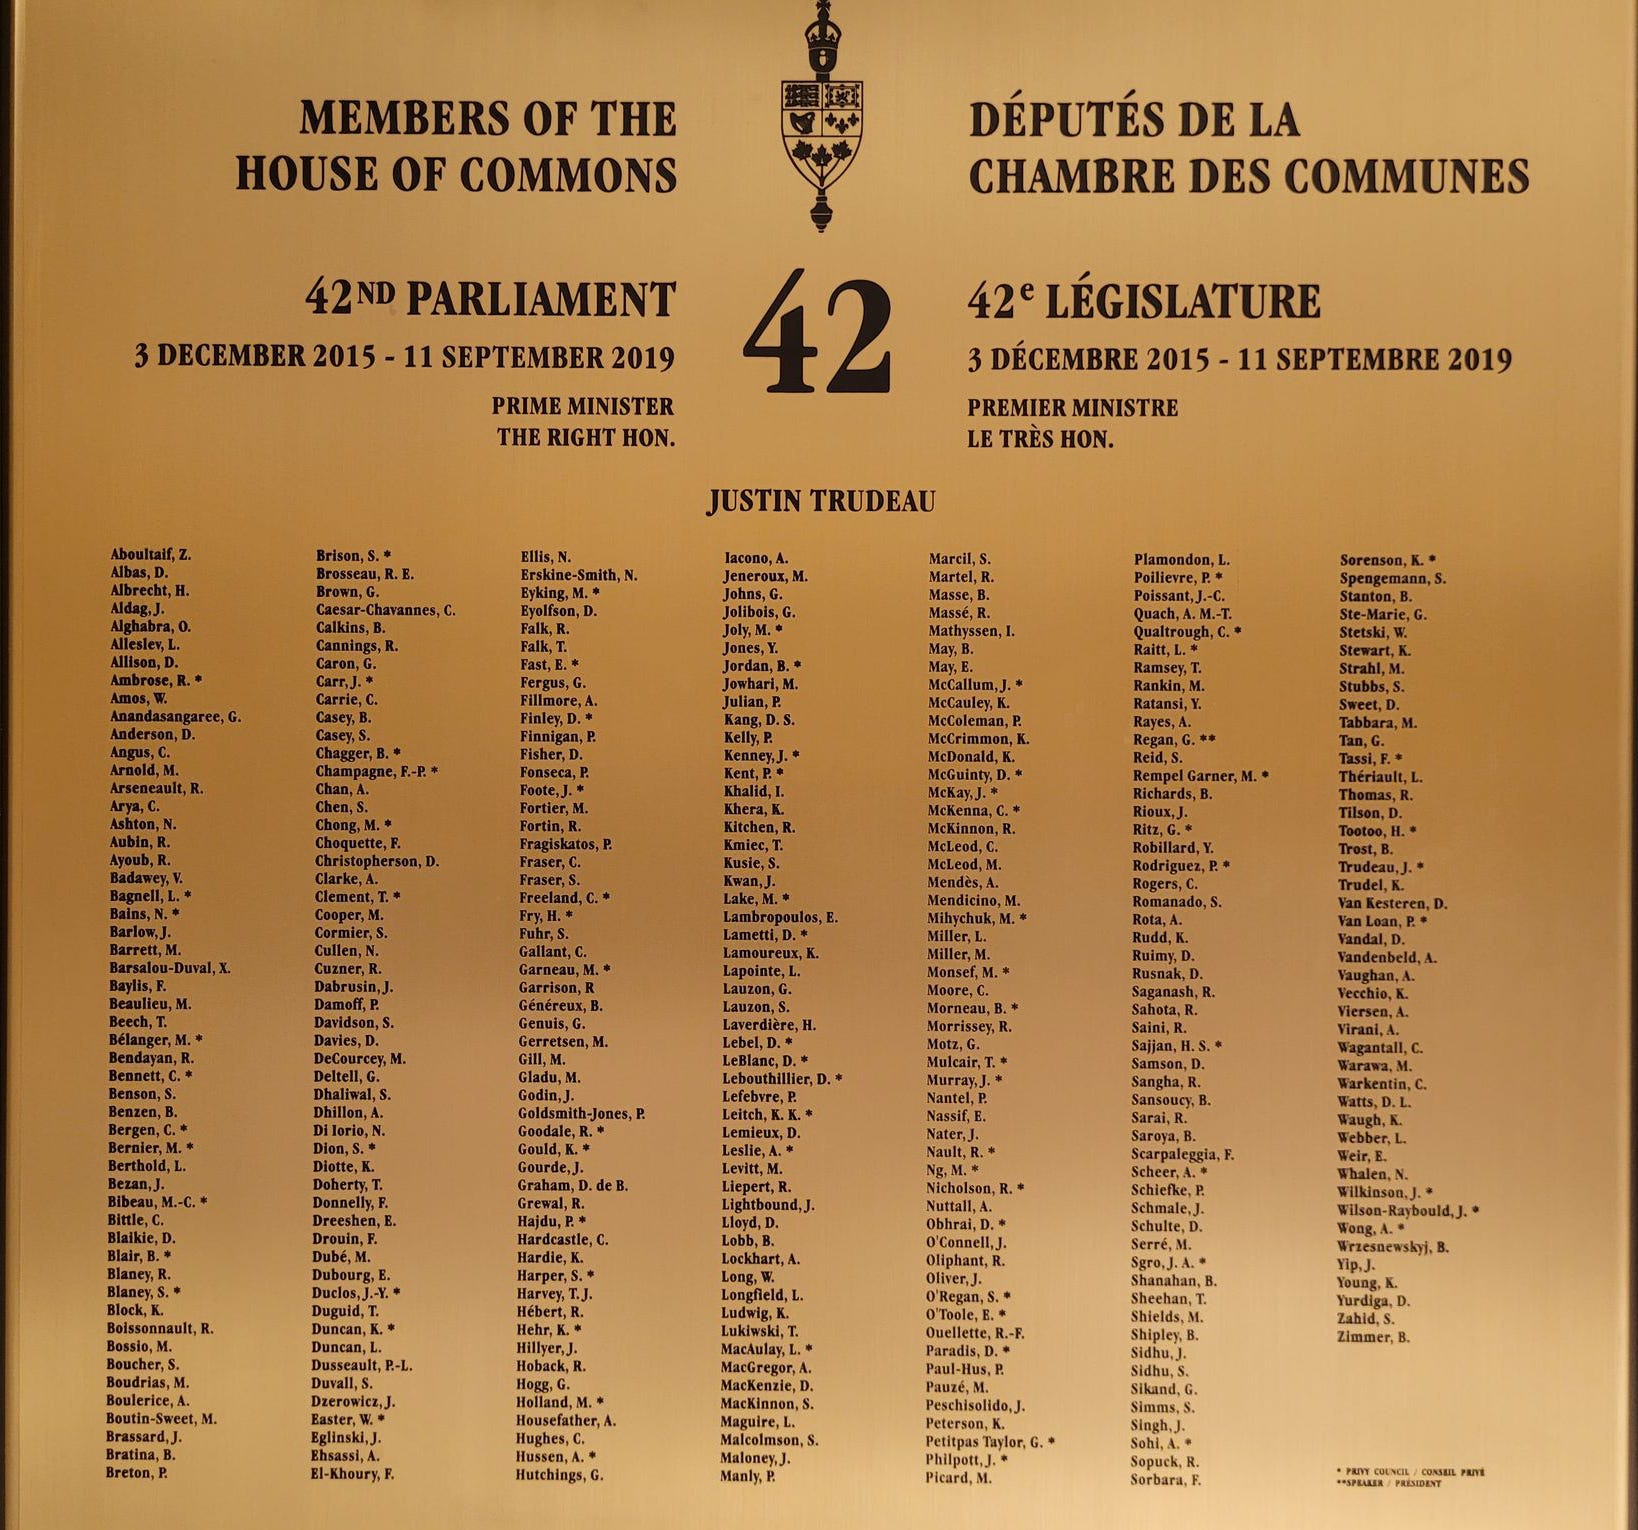 42nd Parliament plaque